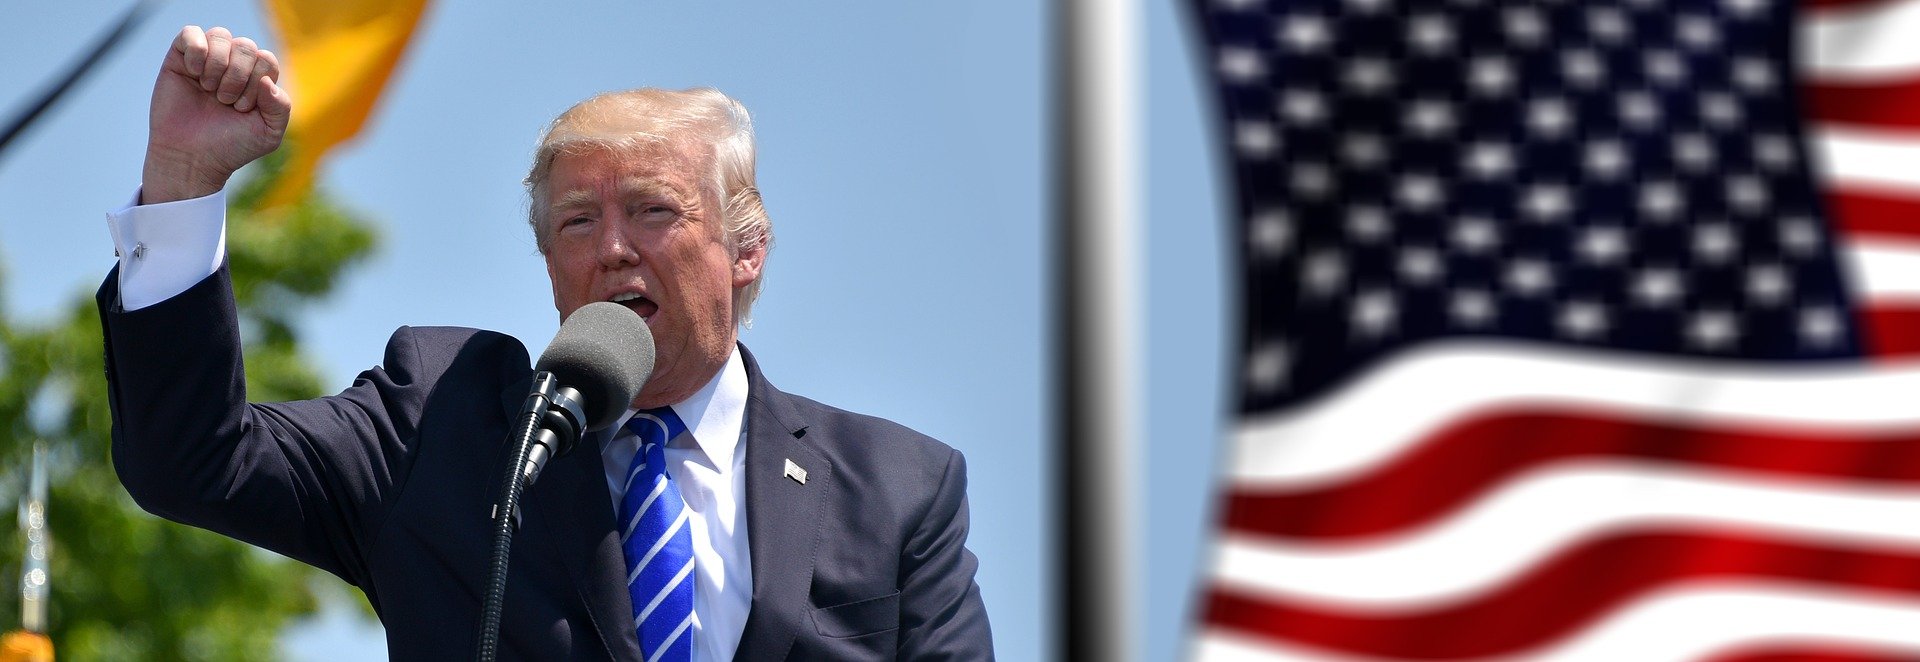 Donald Trump beim Wahlkampf 2020 im Hintergrund ist die US-Flagge zu sehen